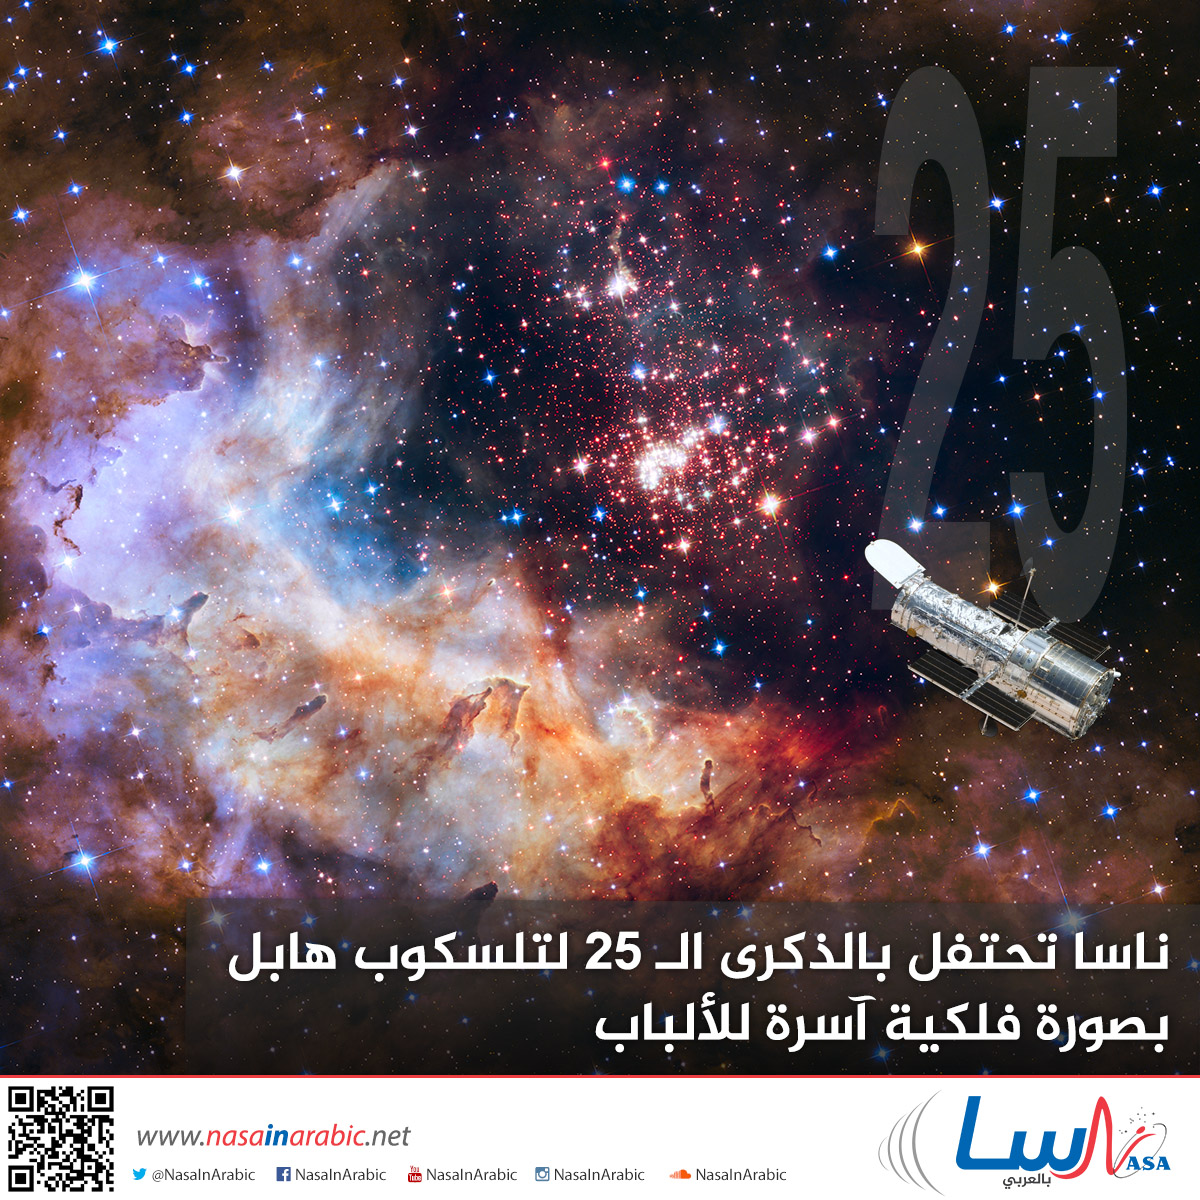 ناسا تحتفل بالذكرى الـ 25 لتلسكوب هابل بصورة فلكية آسرة للألباب